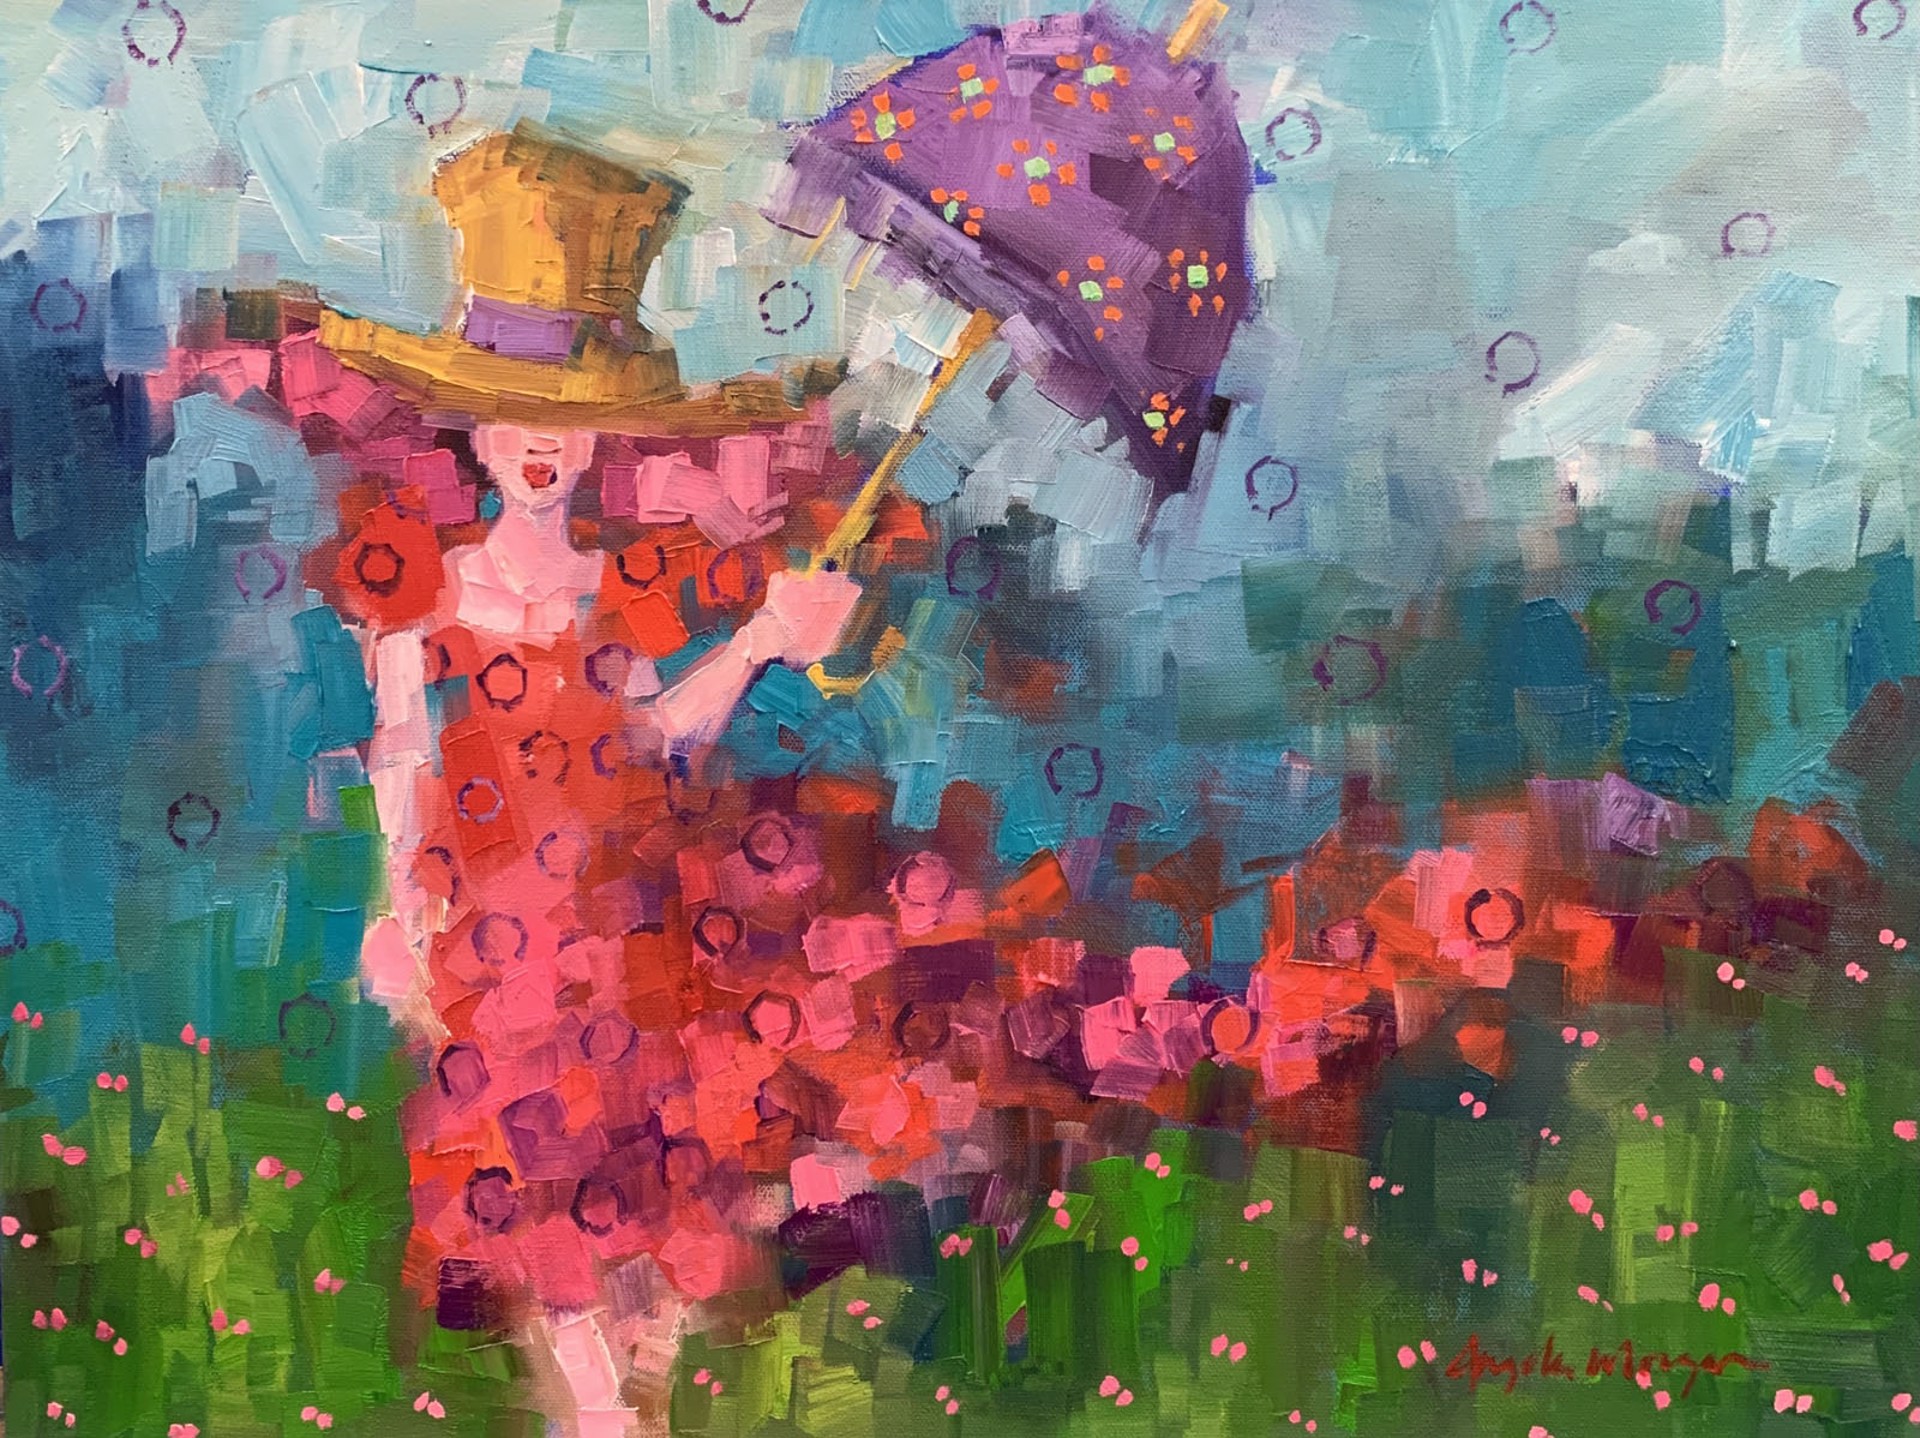 parasol patrol by Angela Morgan